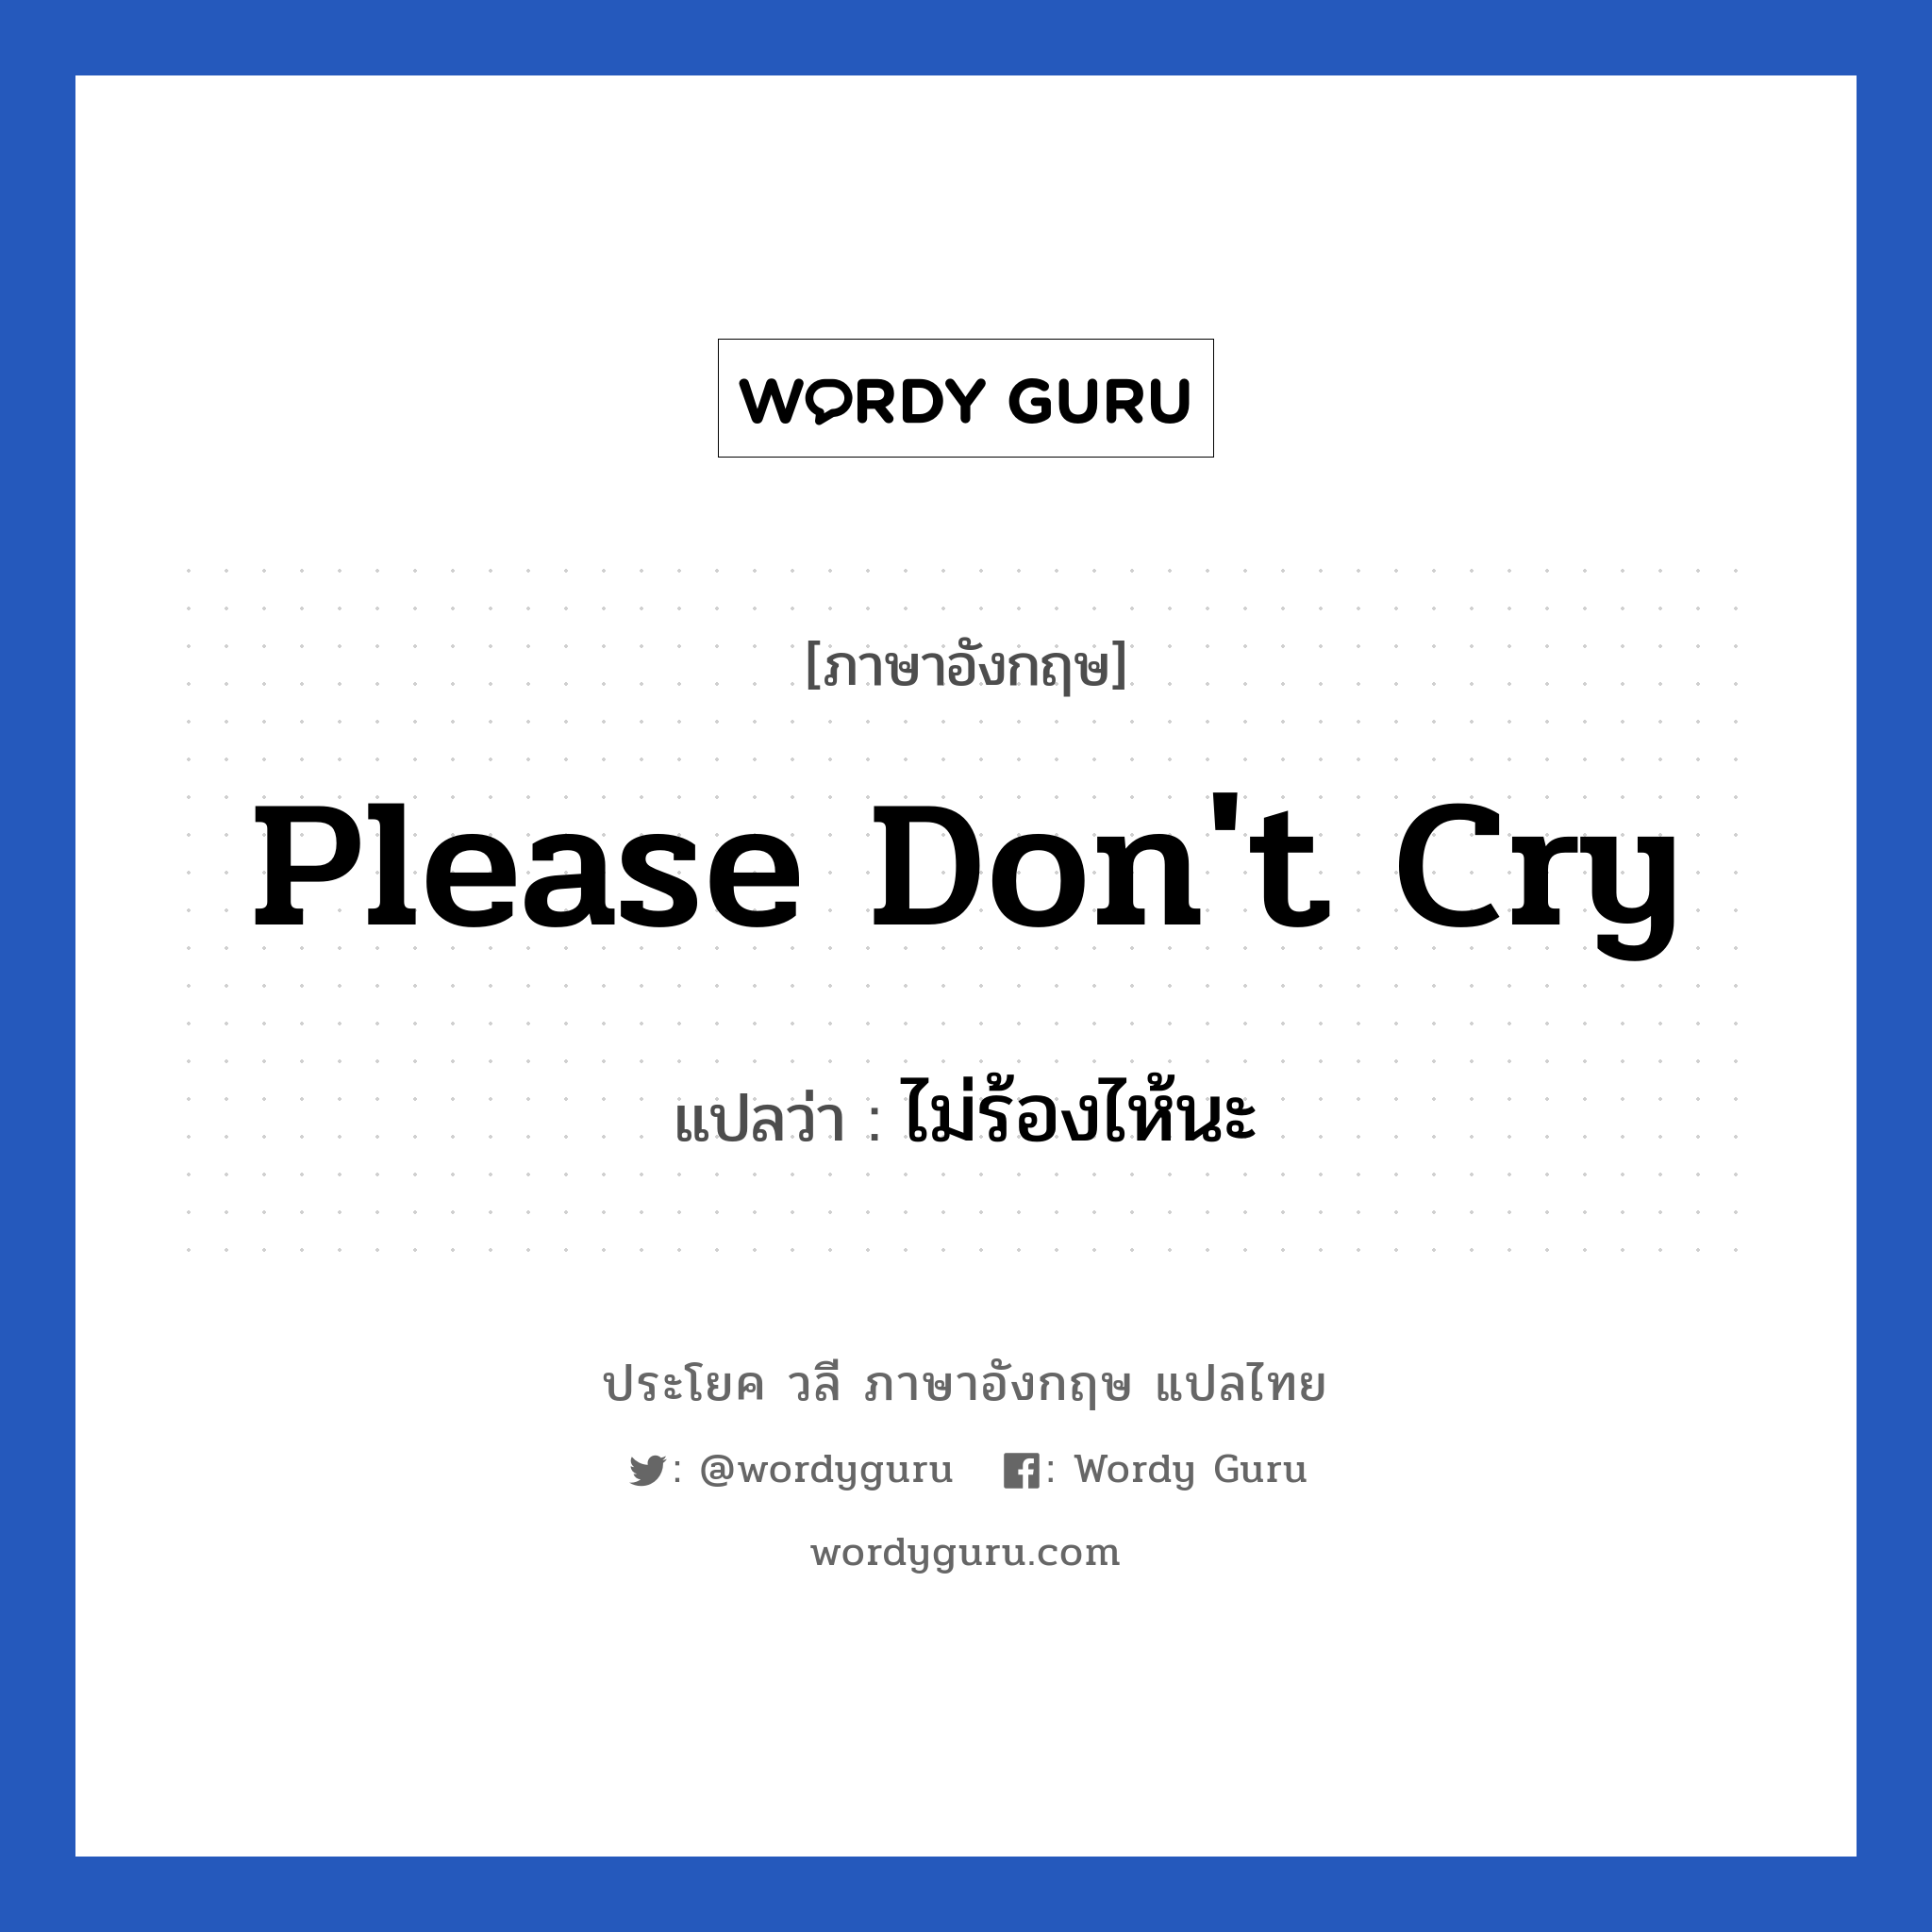 ไม่ร้องไห้นะ ภาษาอังกฤษ?, วลีภาษาอังกฤษ ไม่ร้องไห้นะ แปลว่า Please don't cry